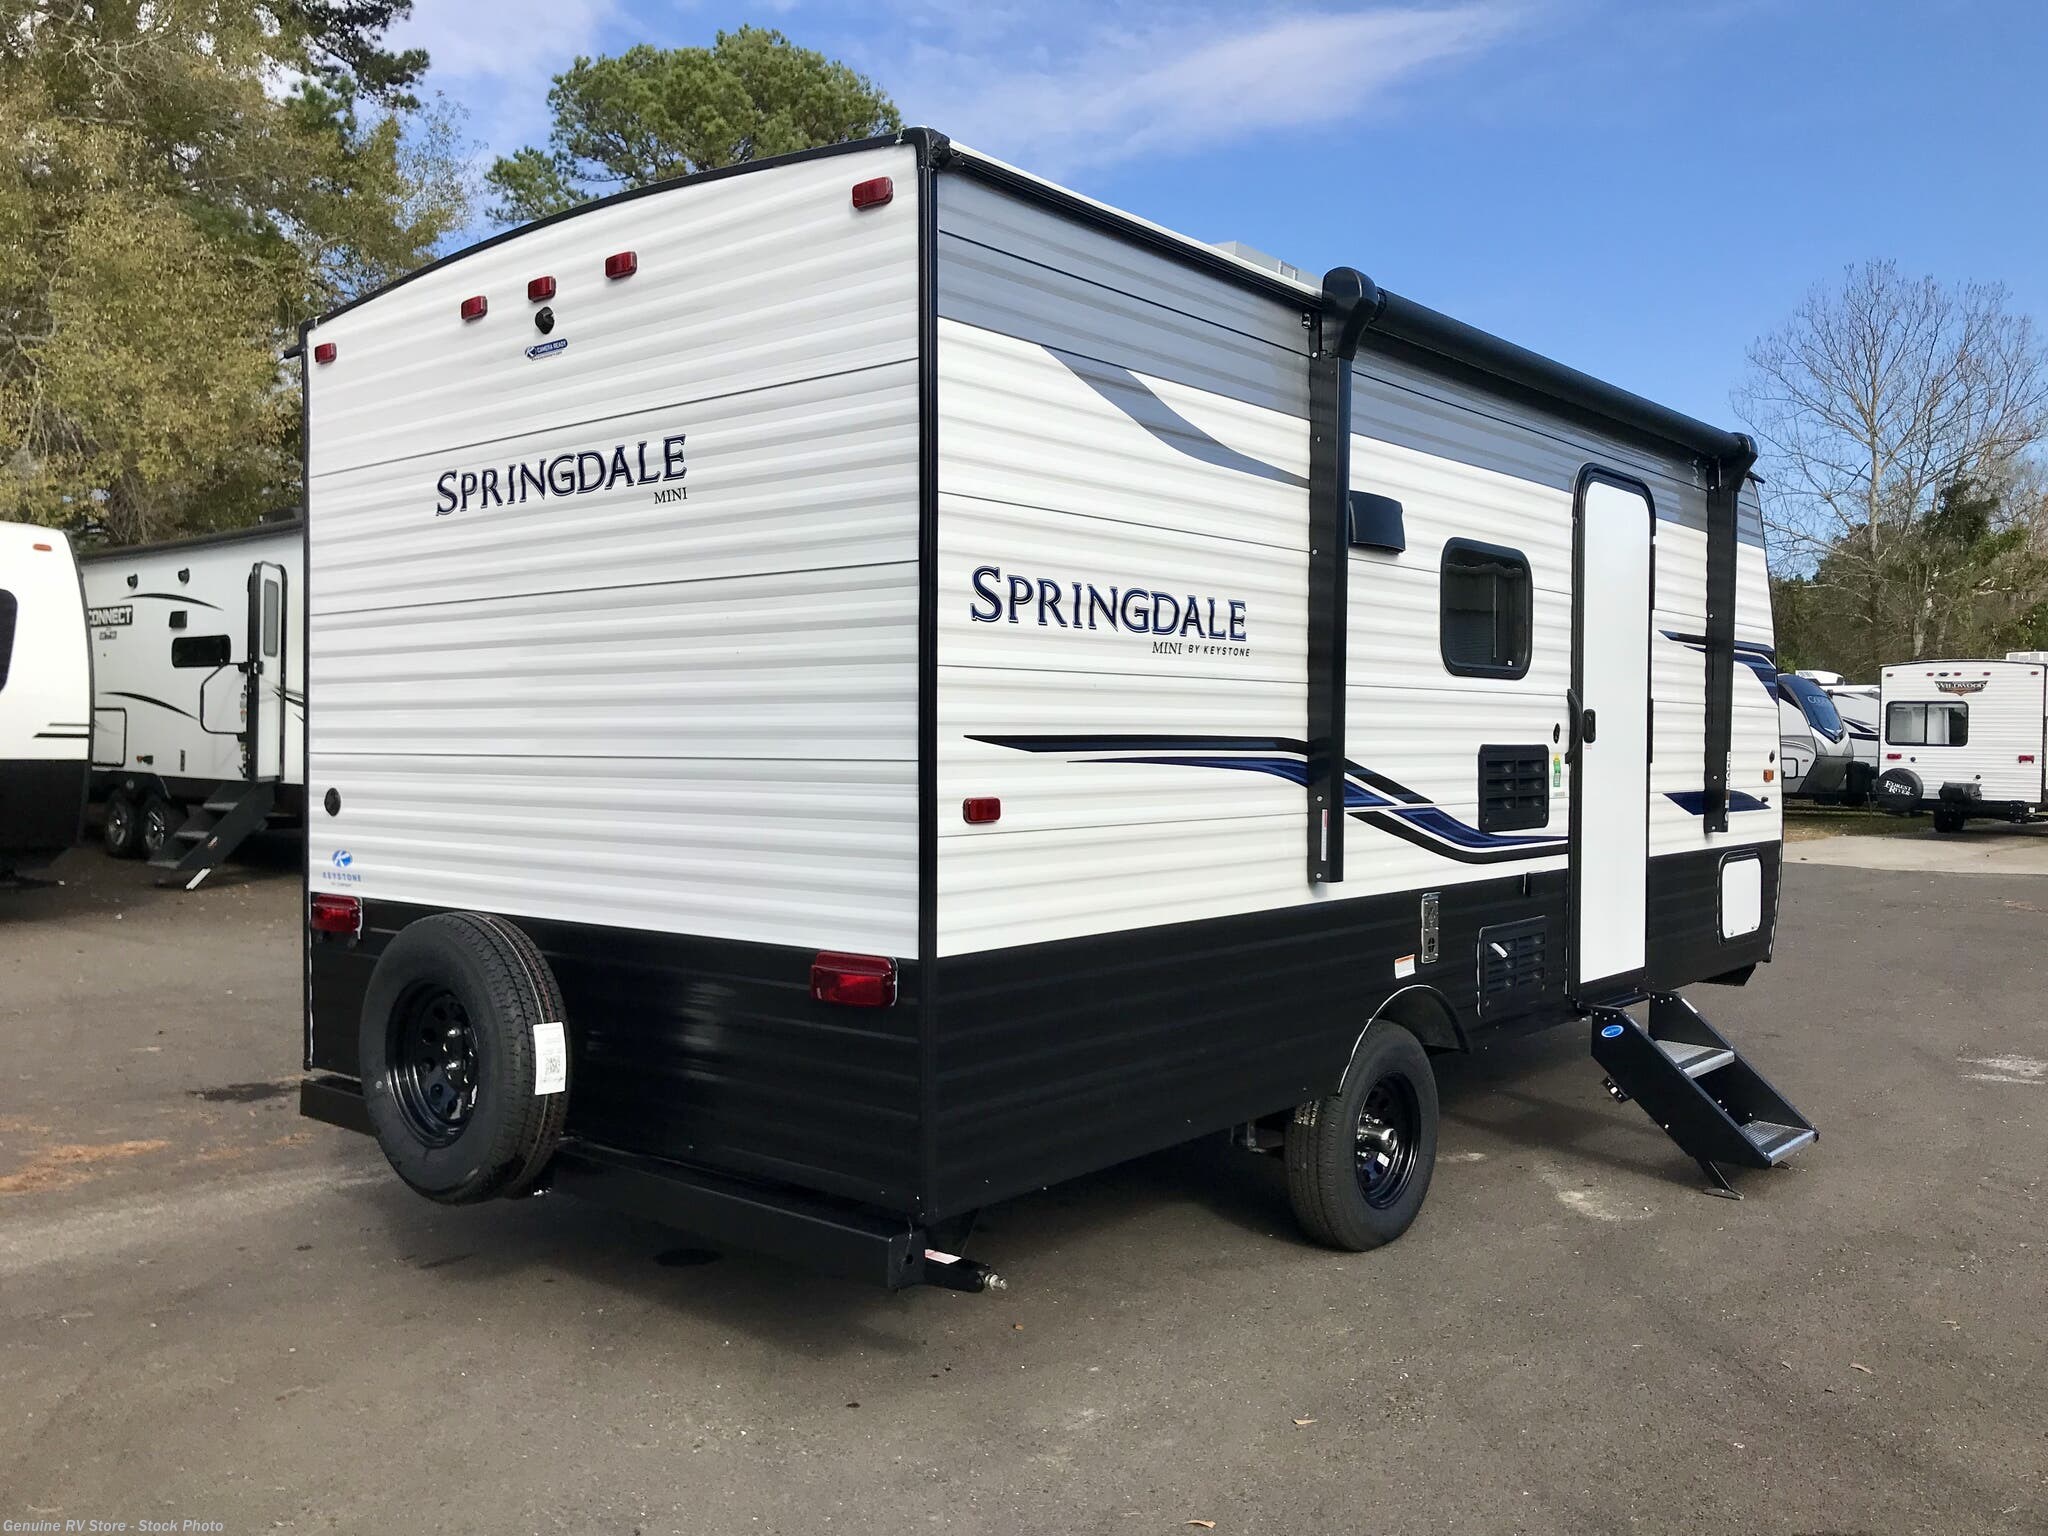 2022 Keystone Springdale 1800BH RV for Sale in Nacogdoches, TX 75964